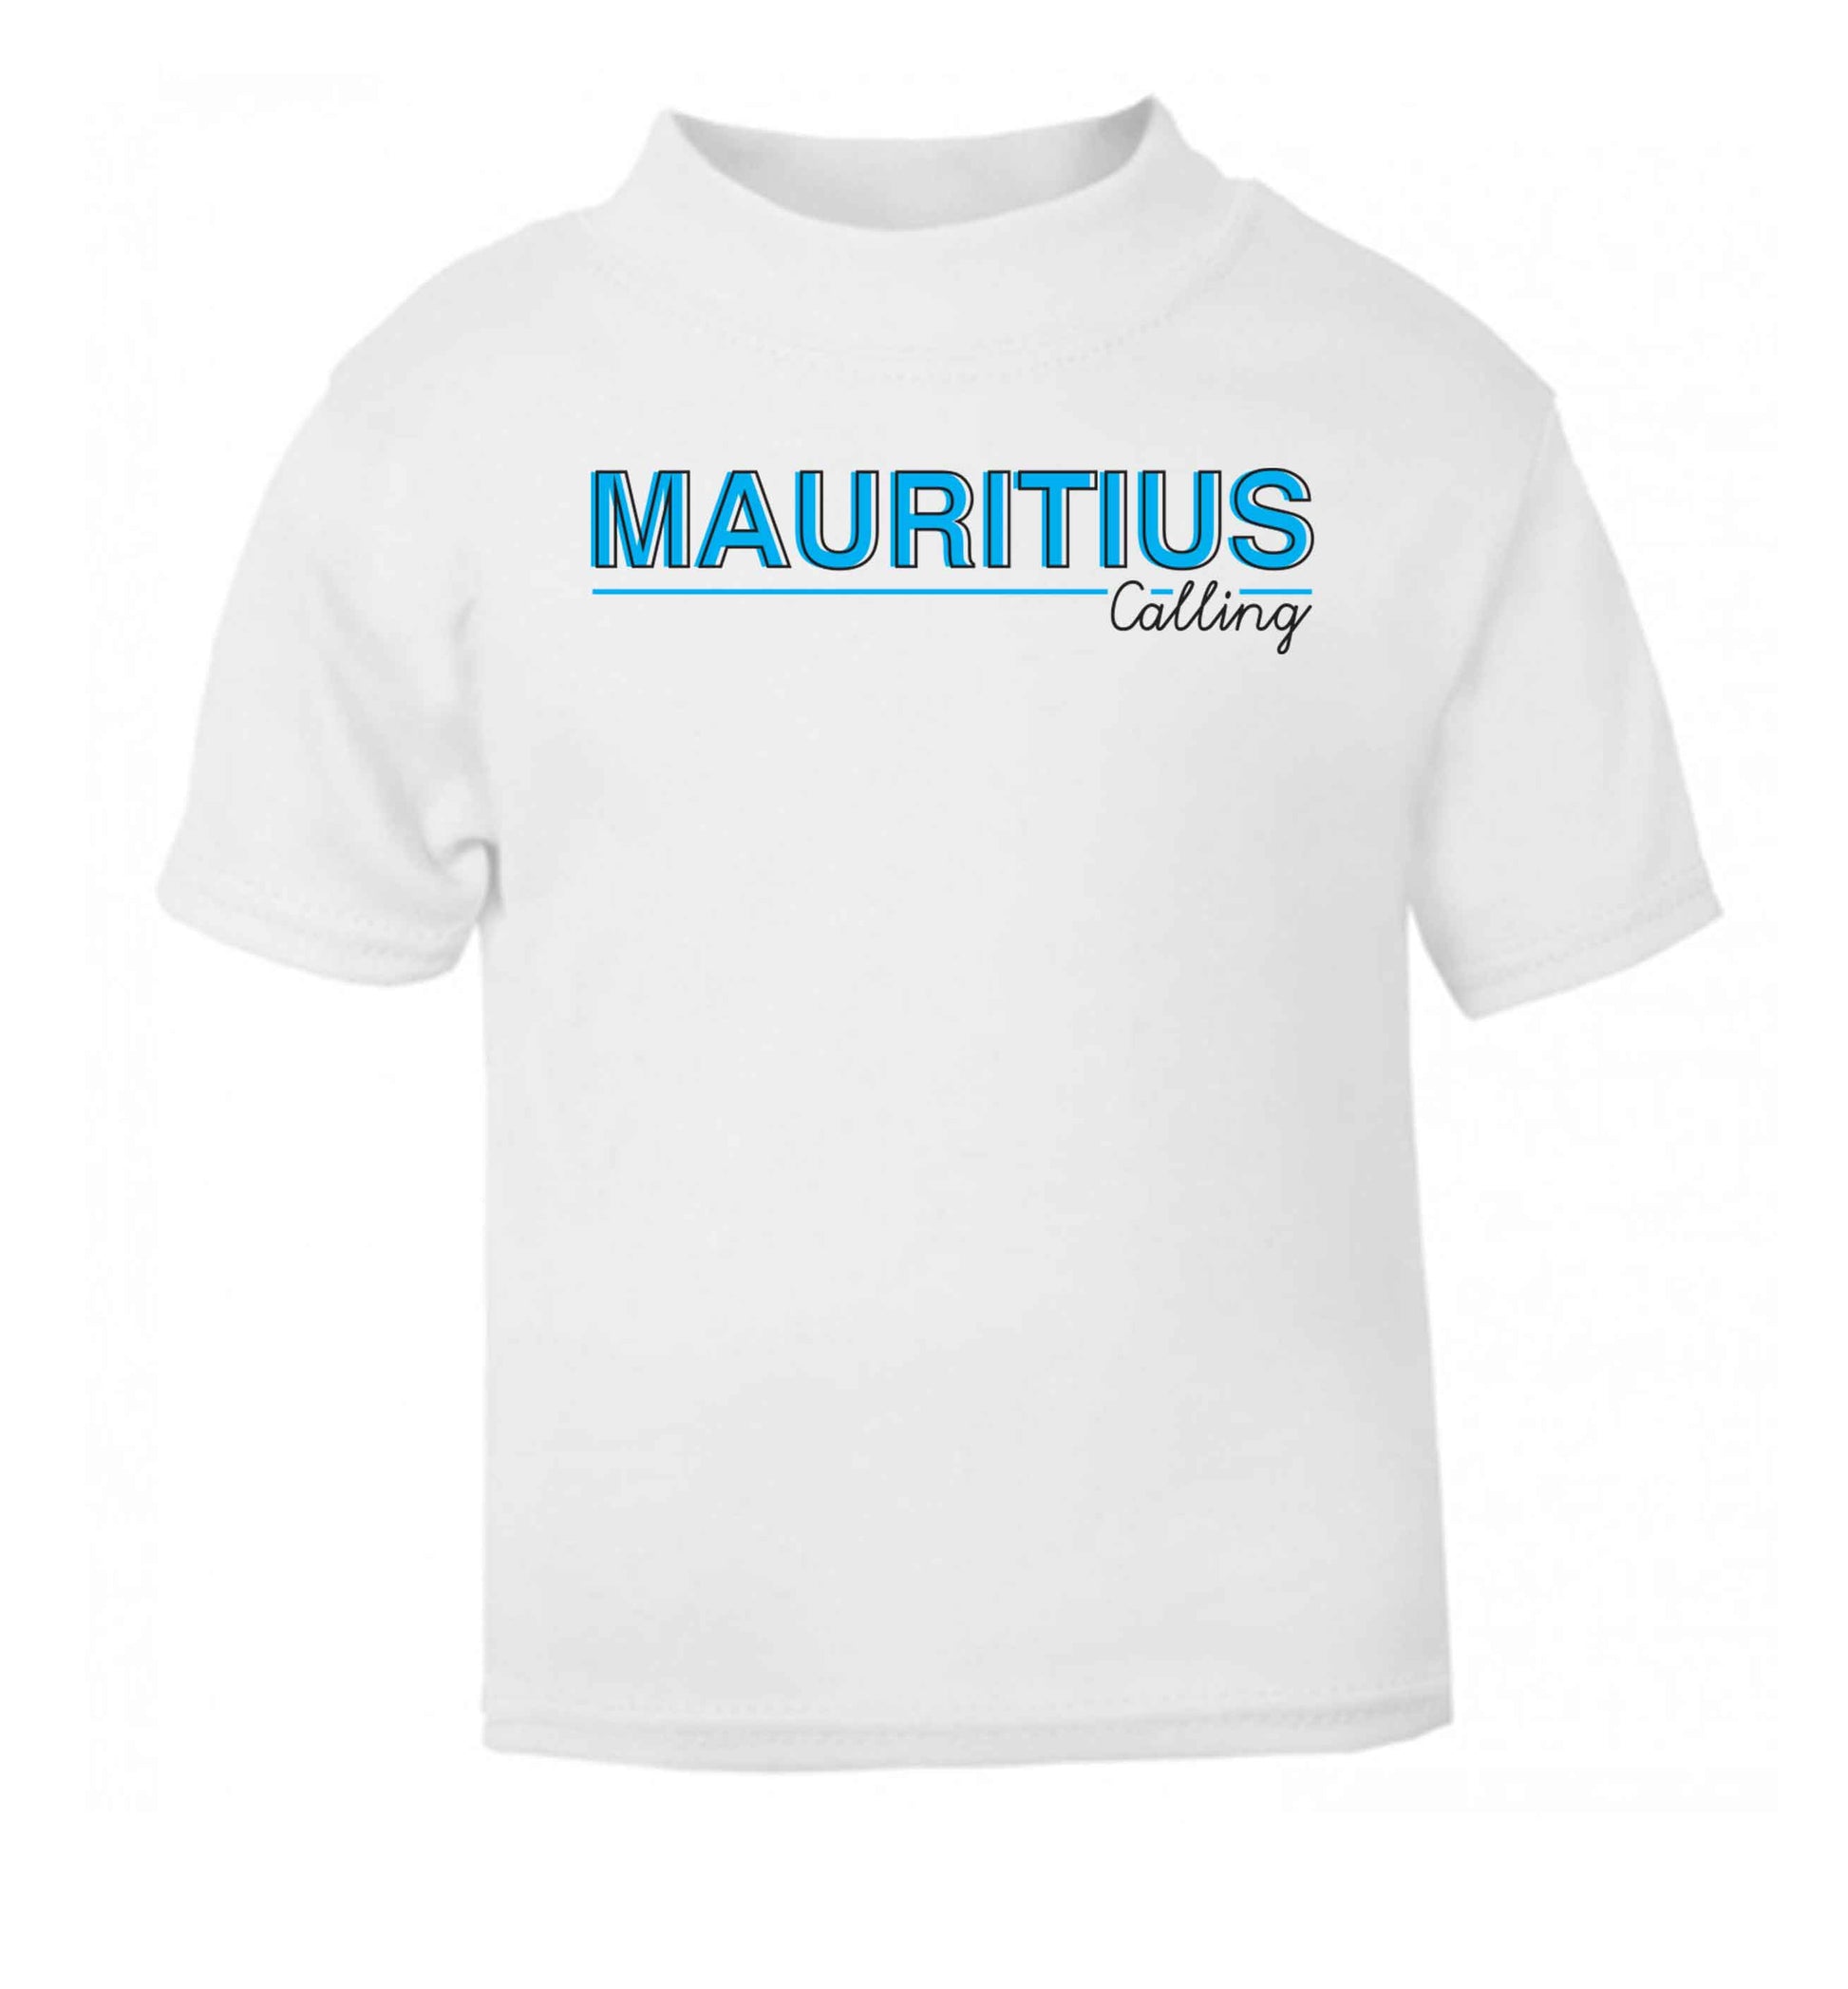 Mauritius calling white Baby Toddler Tshirt 2 Years